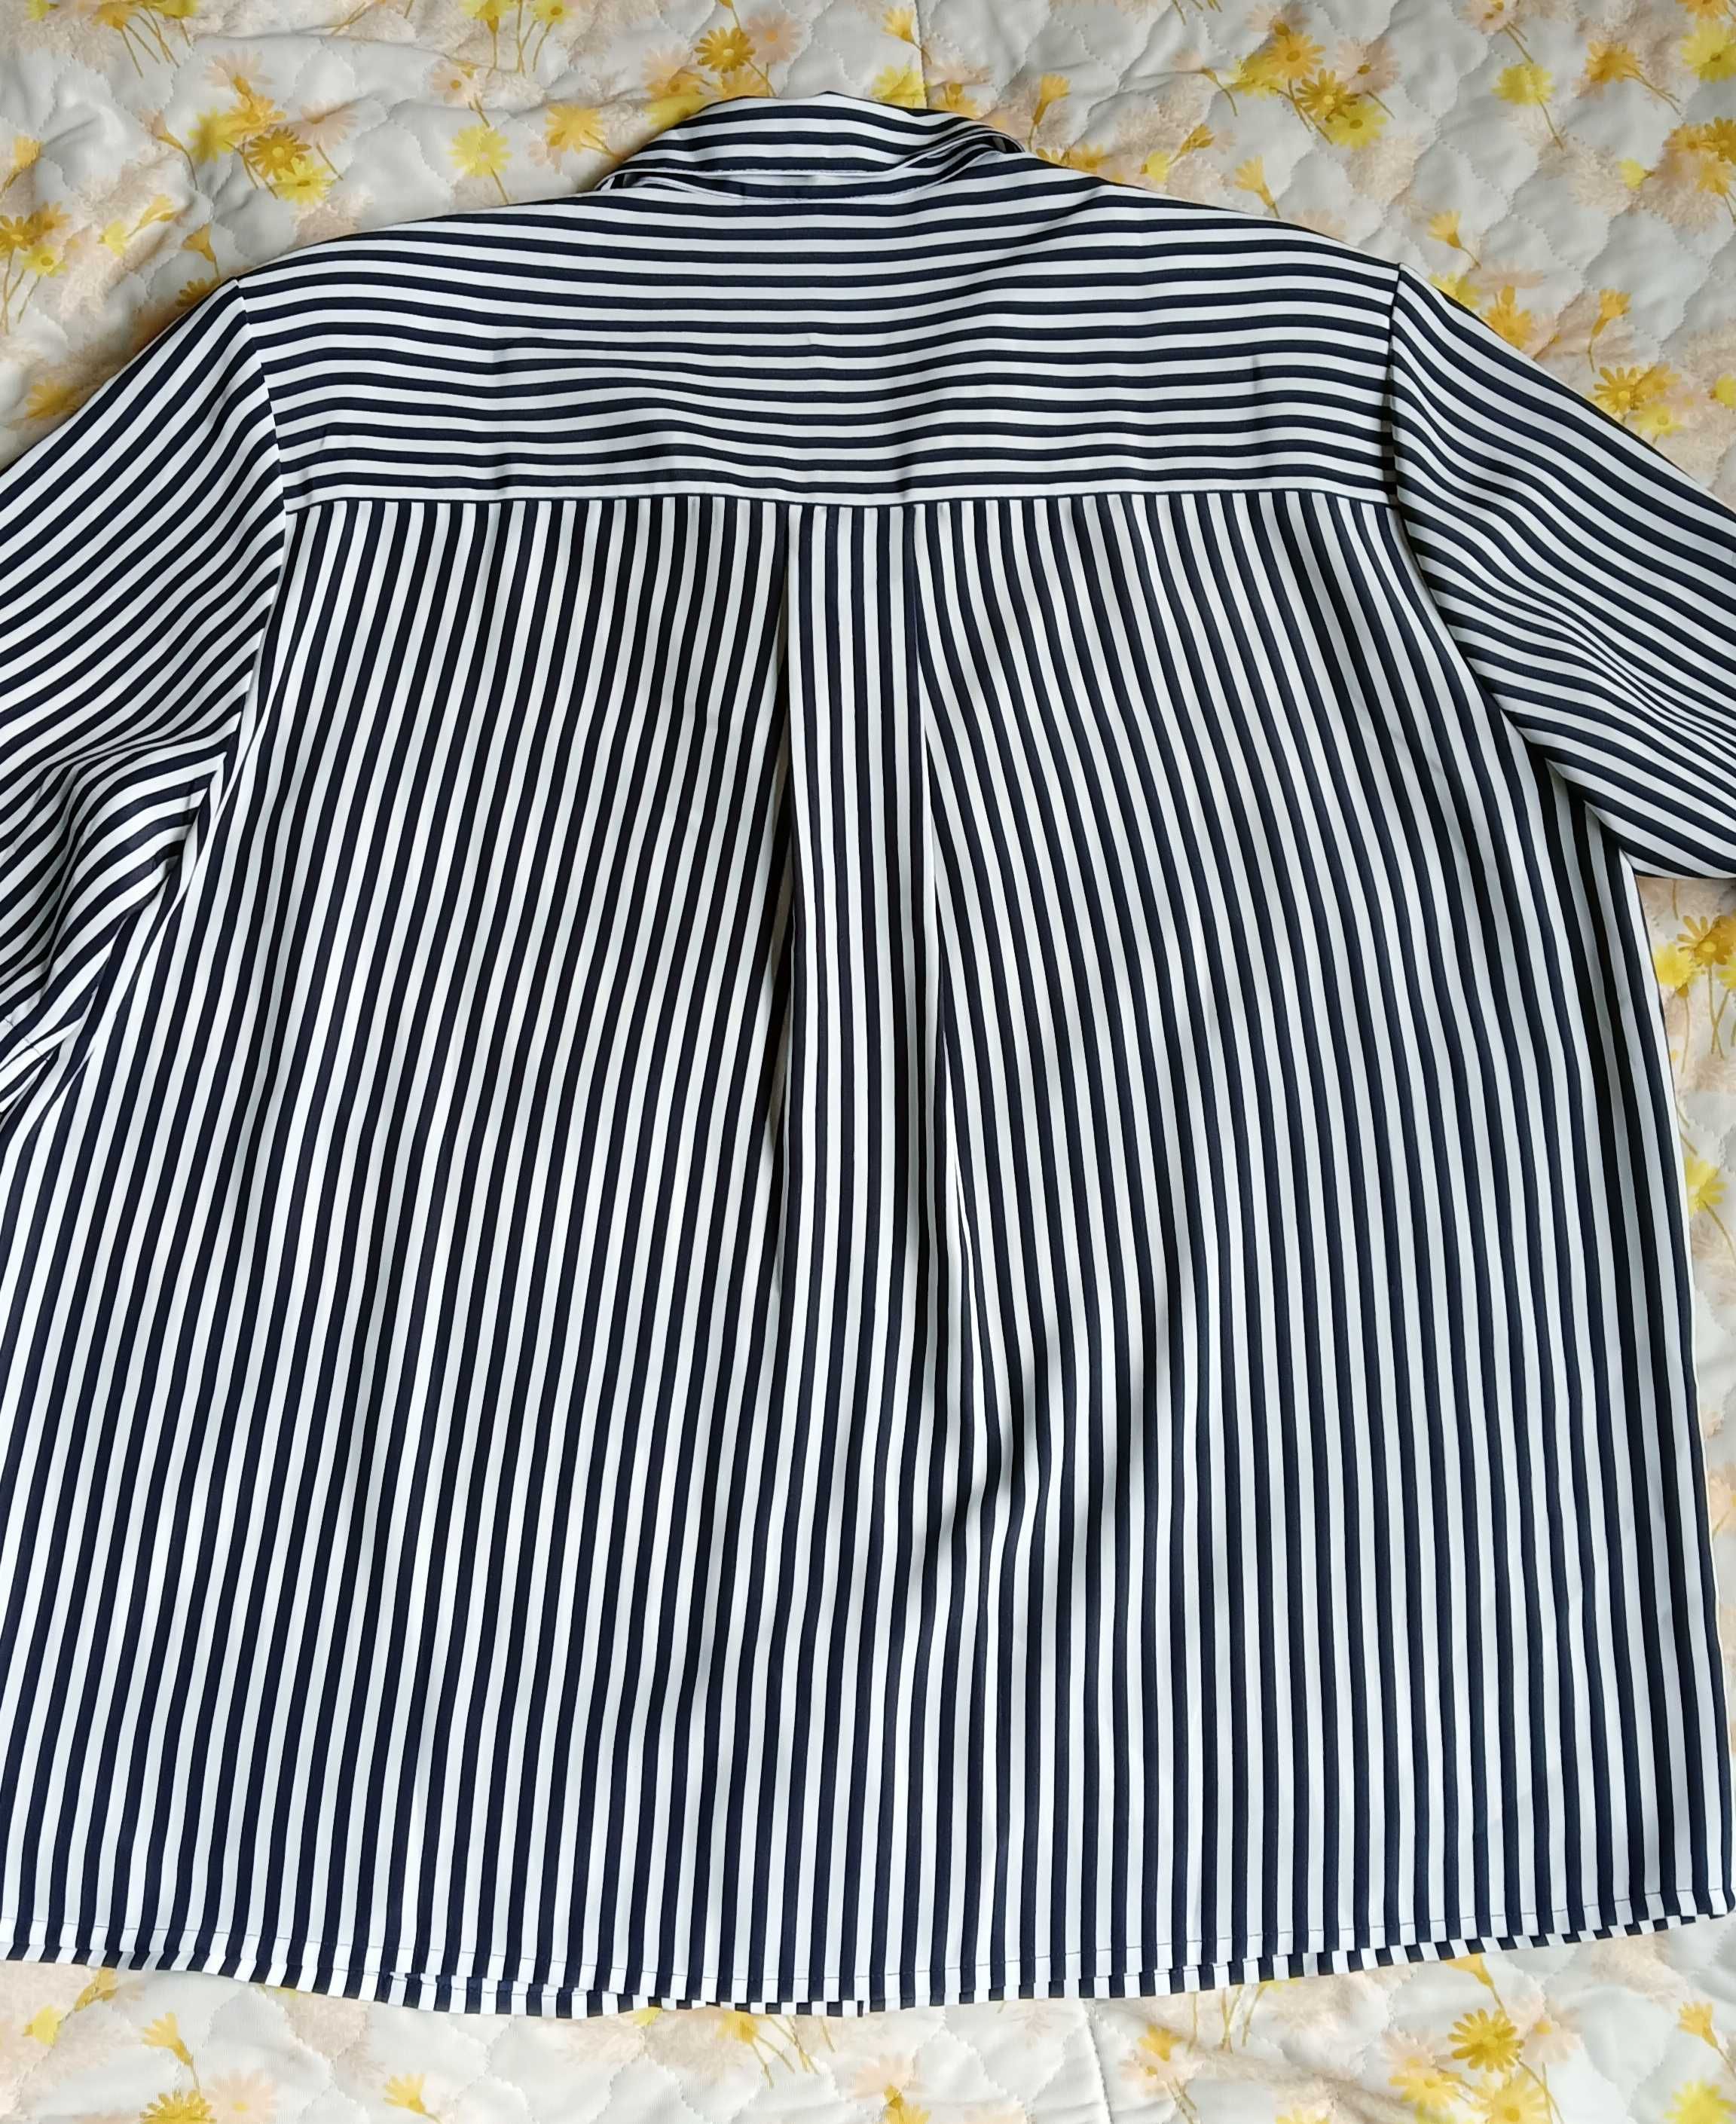 Bluzka pasy marynarskie, rozmiar usa 16 (46)